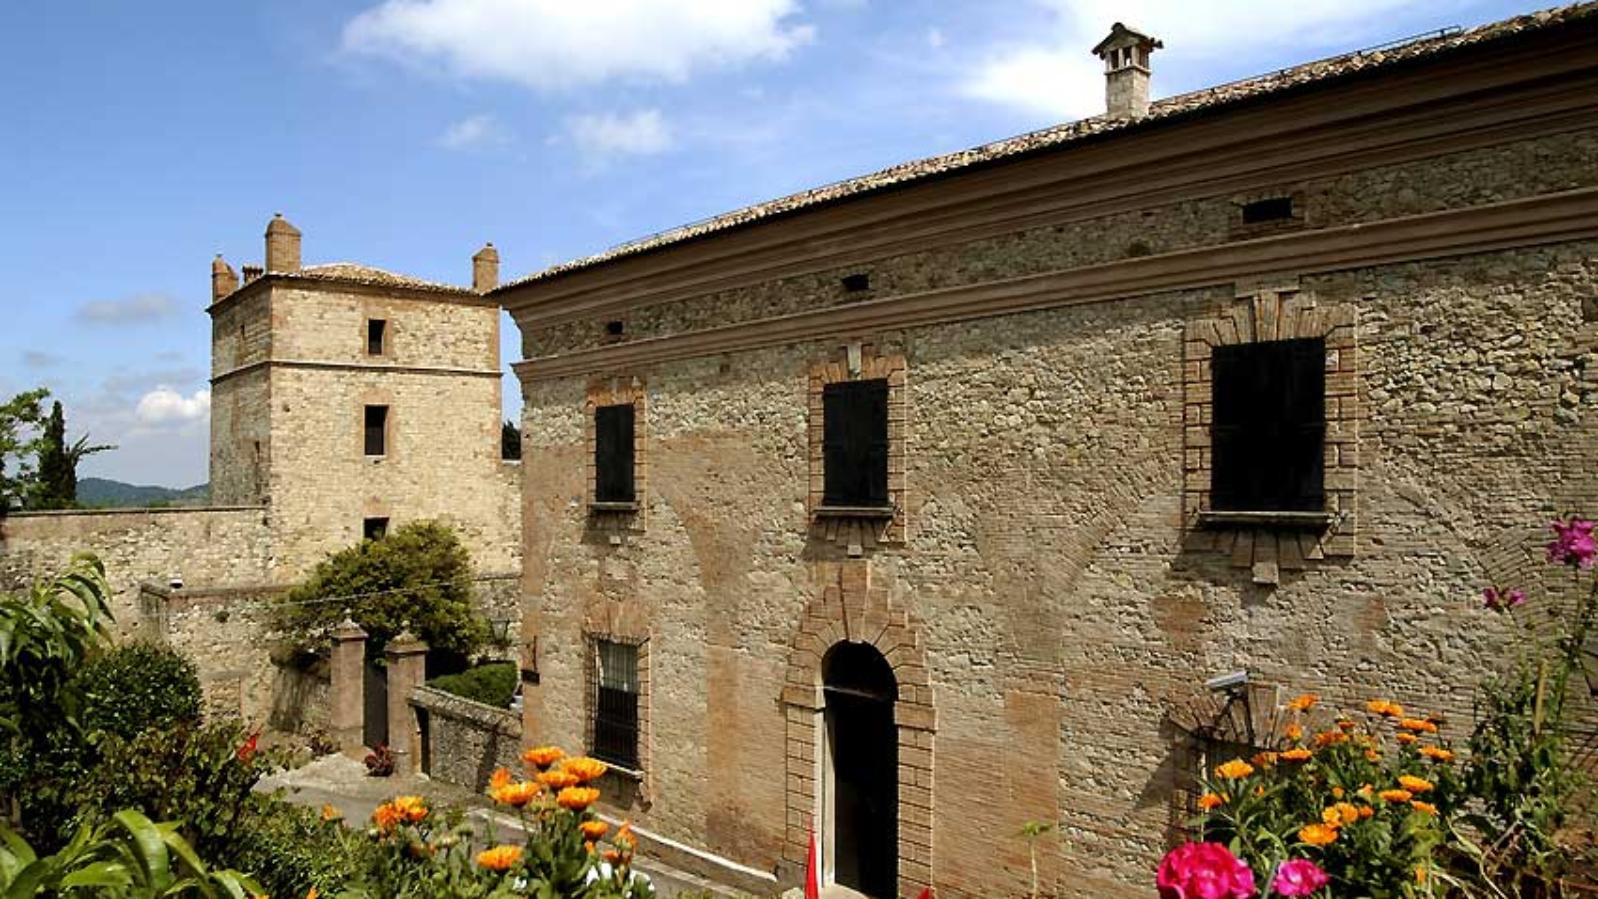 Castello di Serravalle/Castle of Serravalle